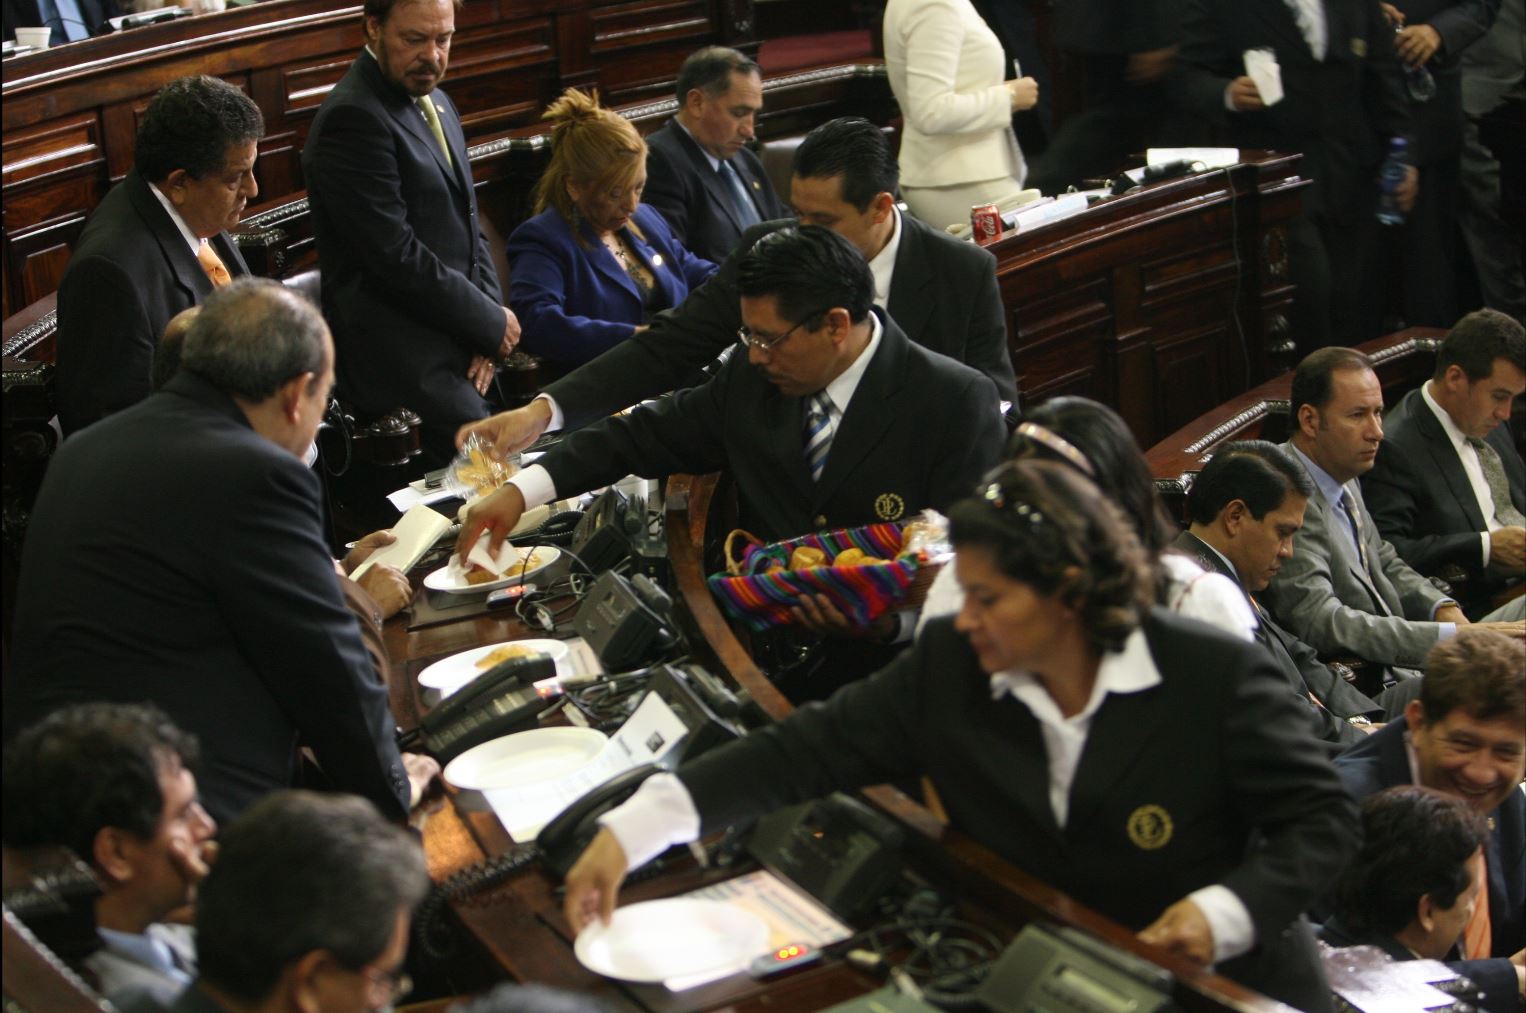 Ujieres del Congreso reparten comida durante la interpelación de Raúl Robles, ministro de Agricultura, en agosto de 2018. (Foto Prensa Libre: Hemeroteca PL)